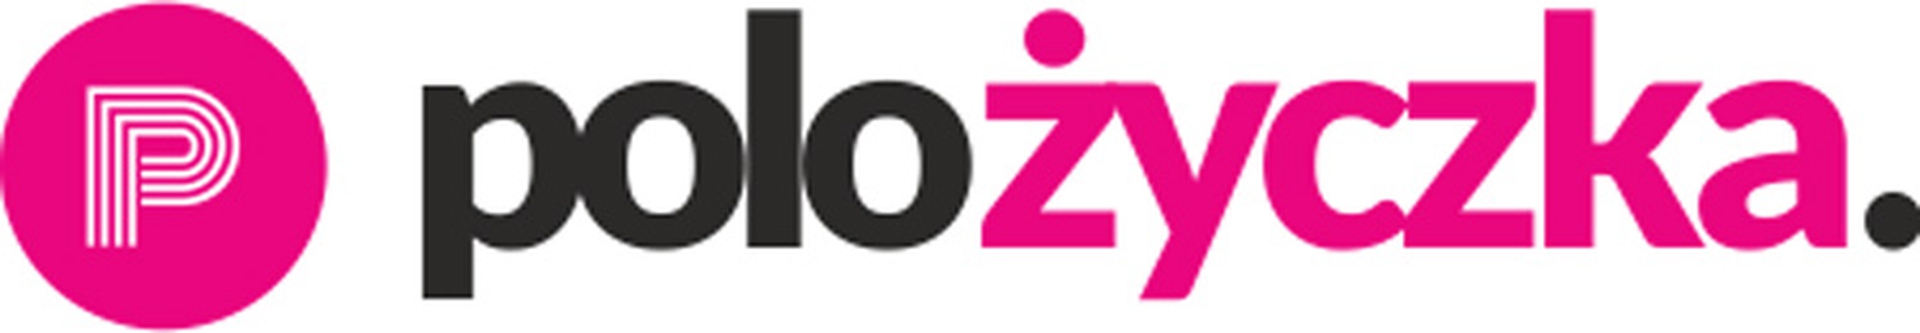 Pożyczka logo 1